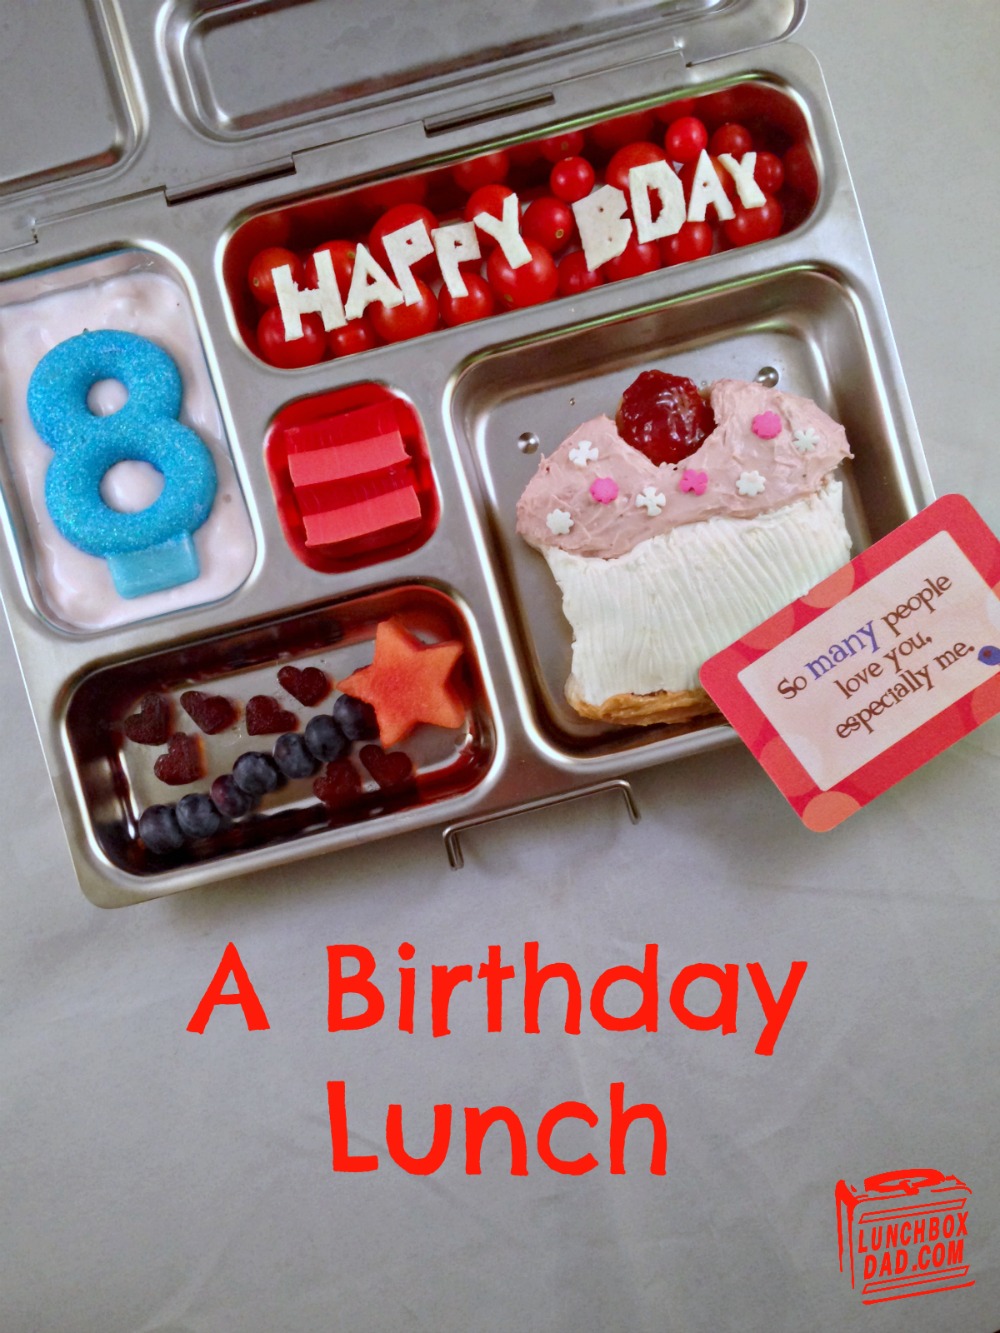 Lunchbox Dad: A Birthday Lunch